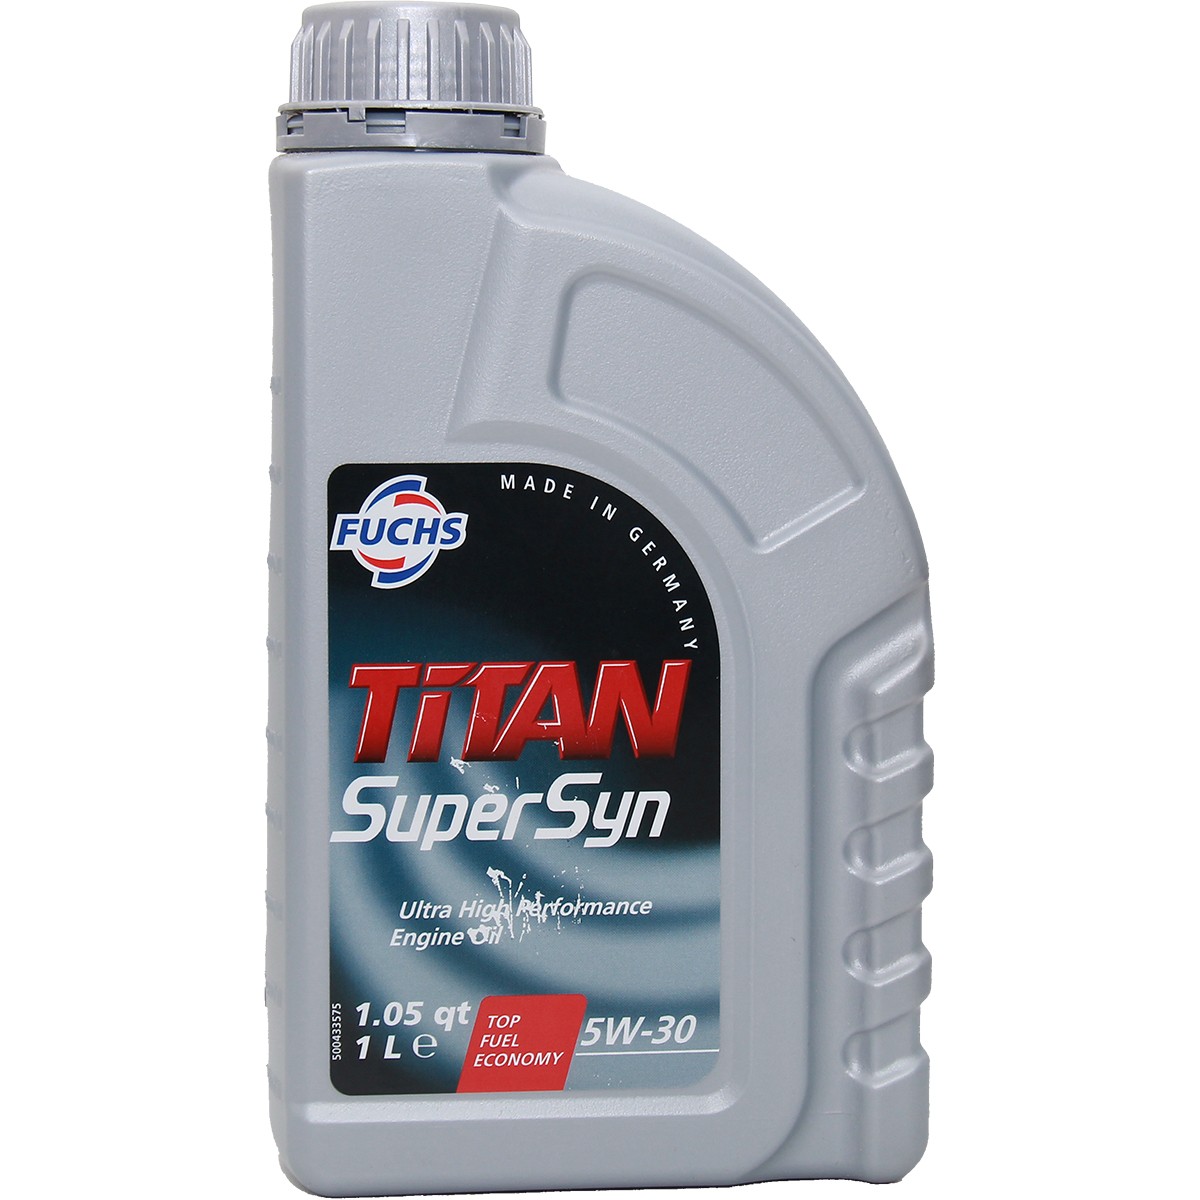 FUCHS TITAN, Supersyn 5W-30, 1l Motor oil 600640736 buy